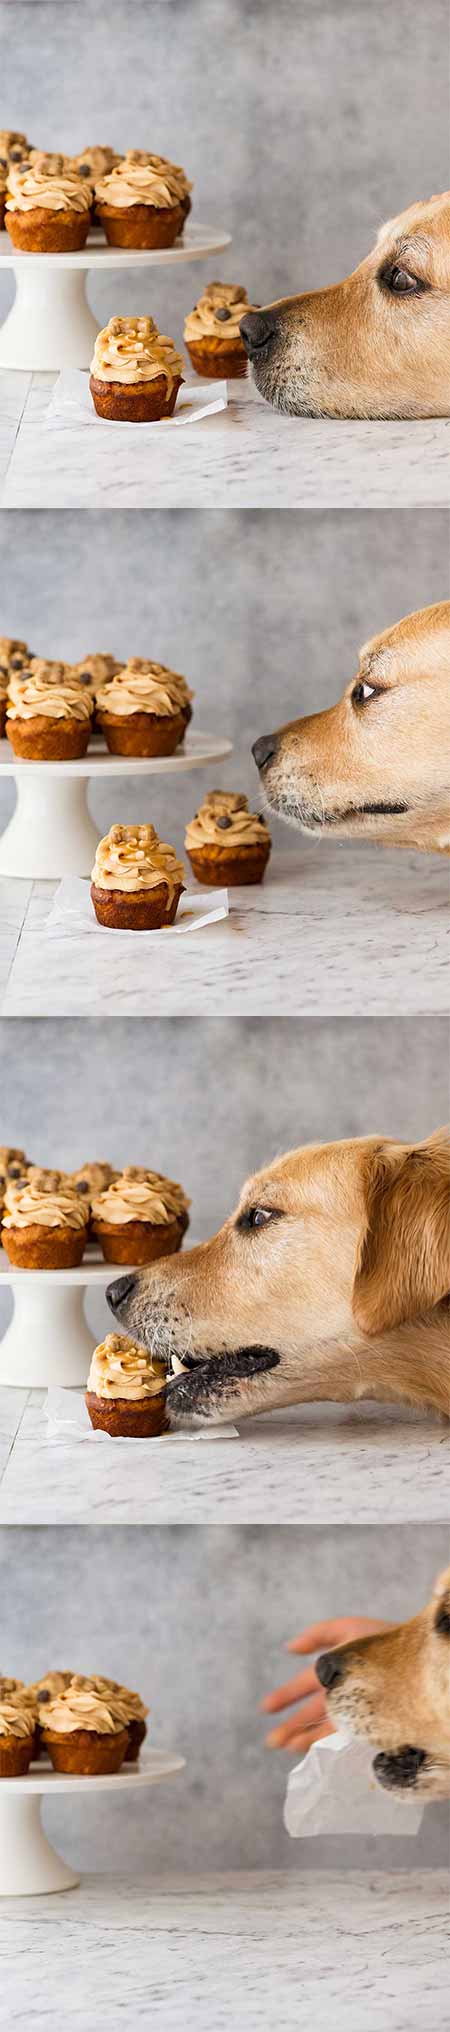 Dozer the golden retriever dog diving for cupcakes - RSCPA Cupcake Day 2018